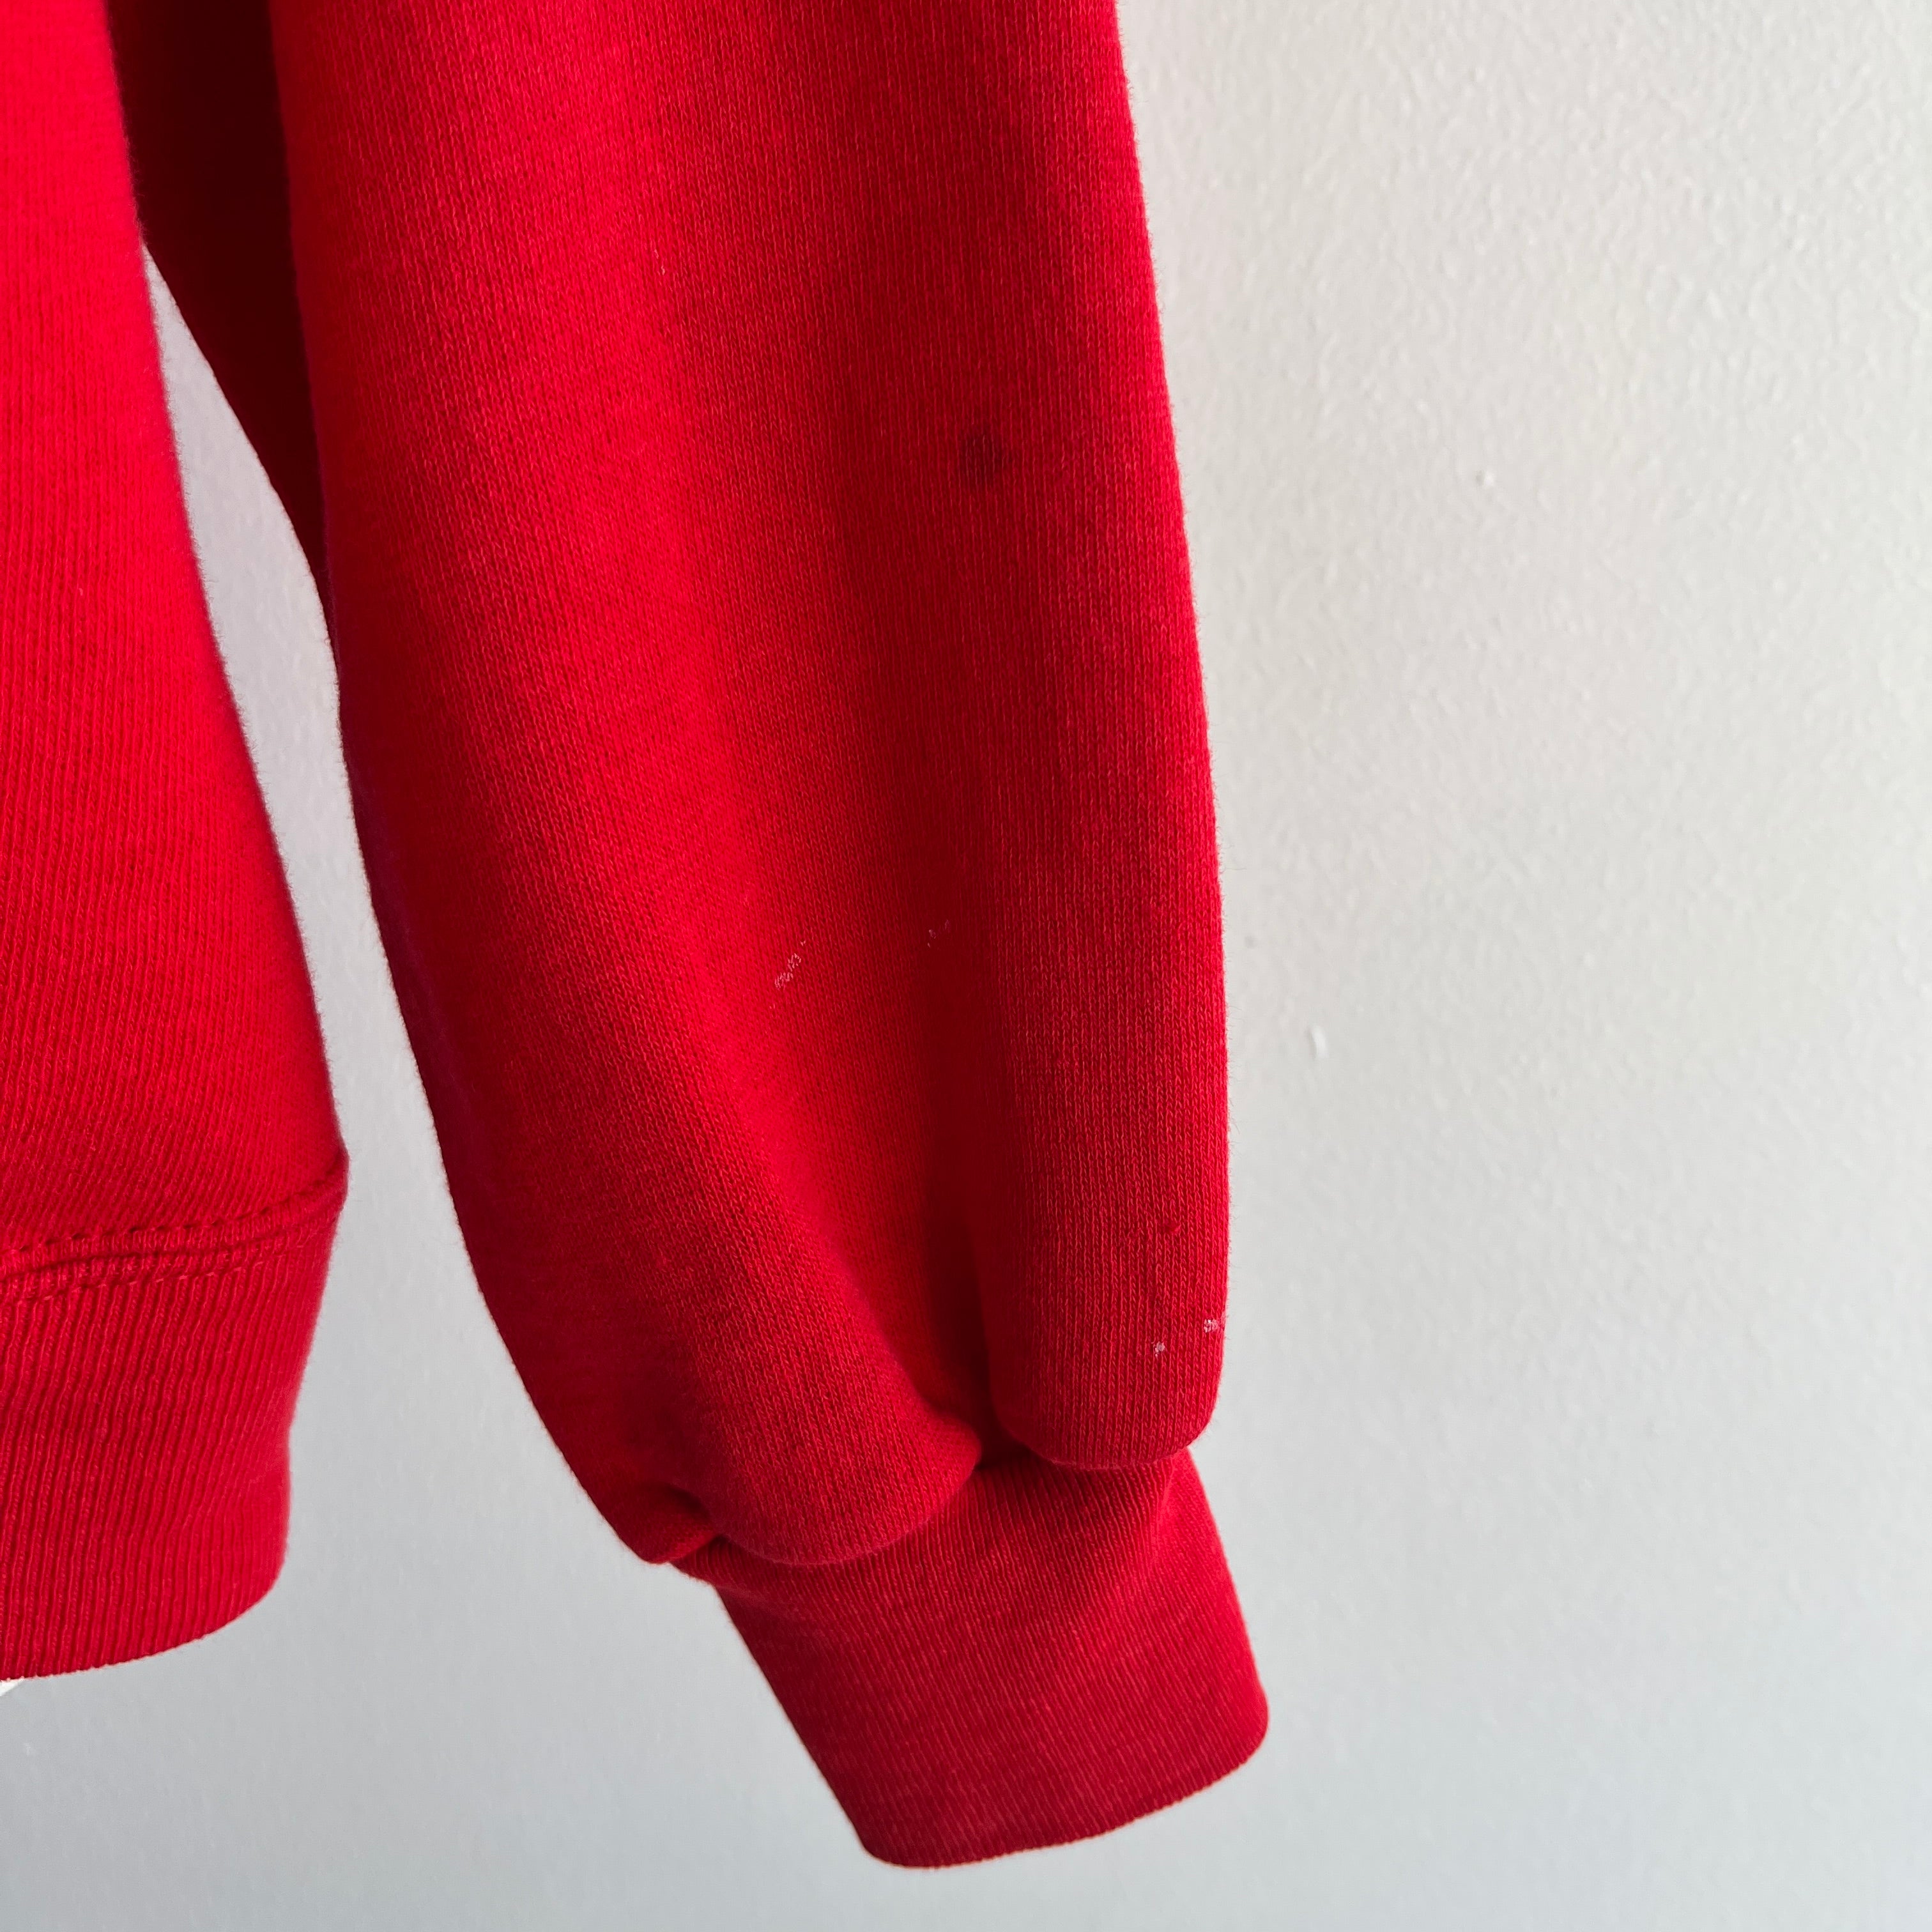 1980s Vibrant Red Zip Up Hoodie Sweatshirt